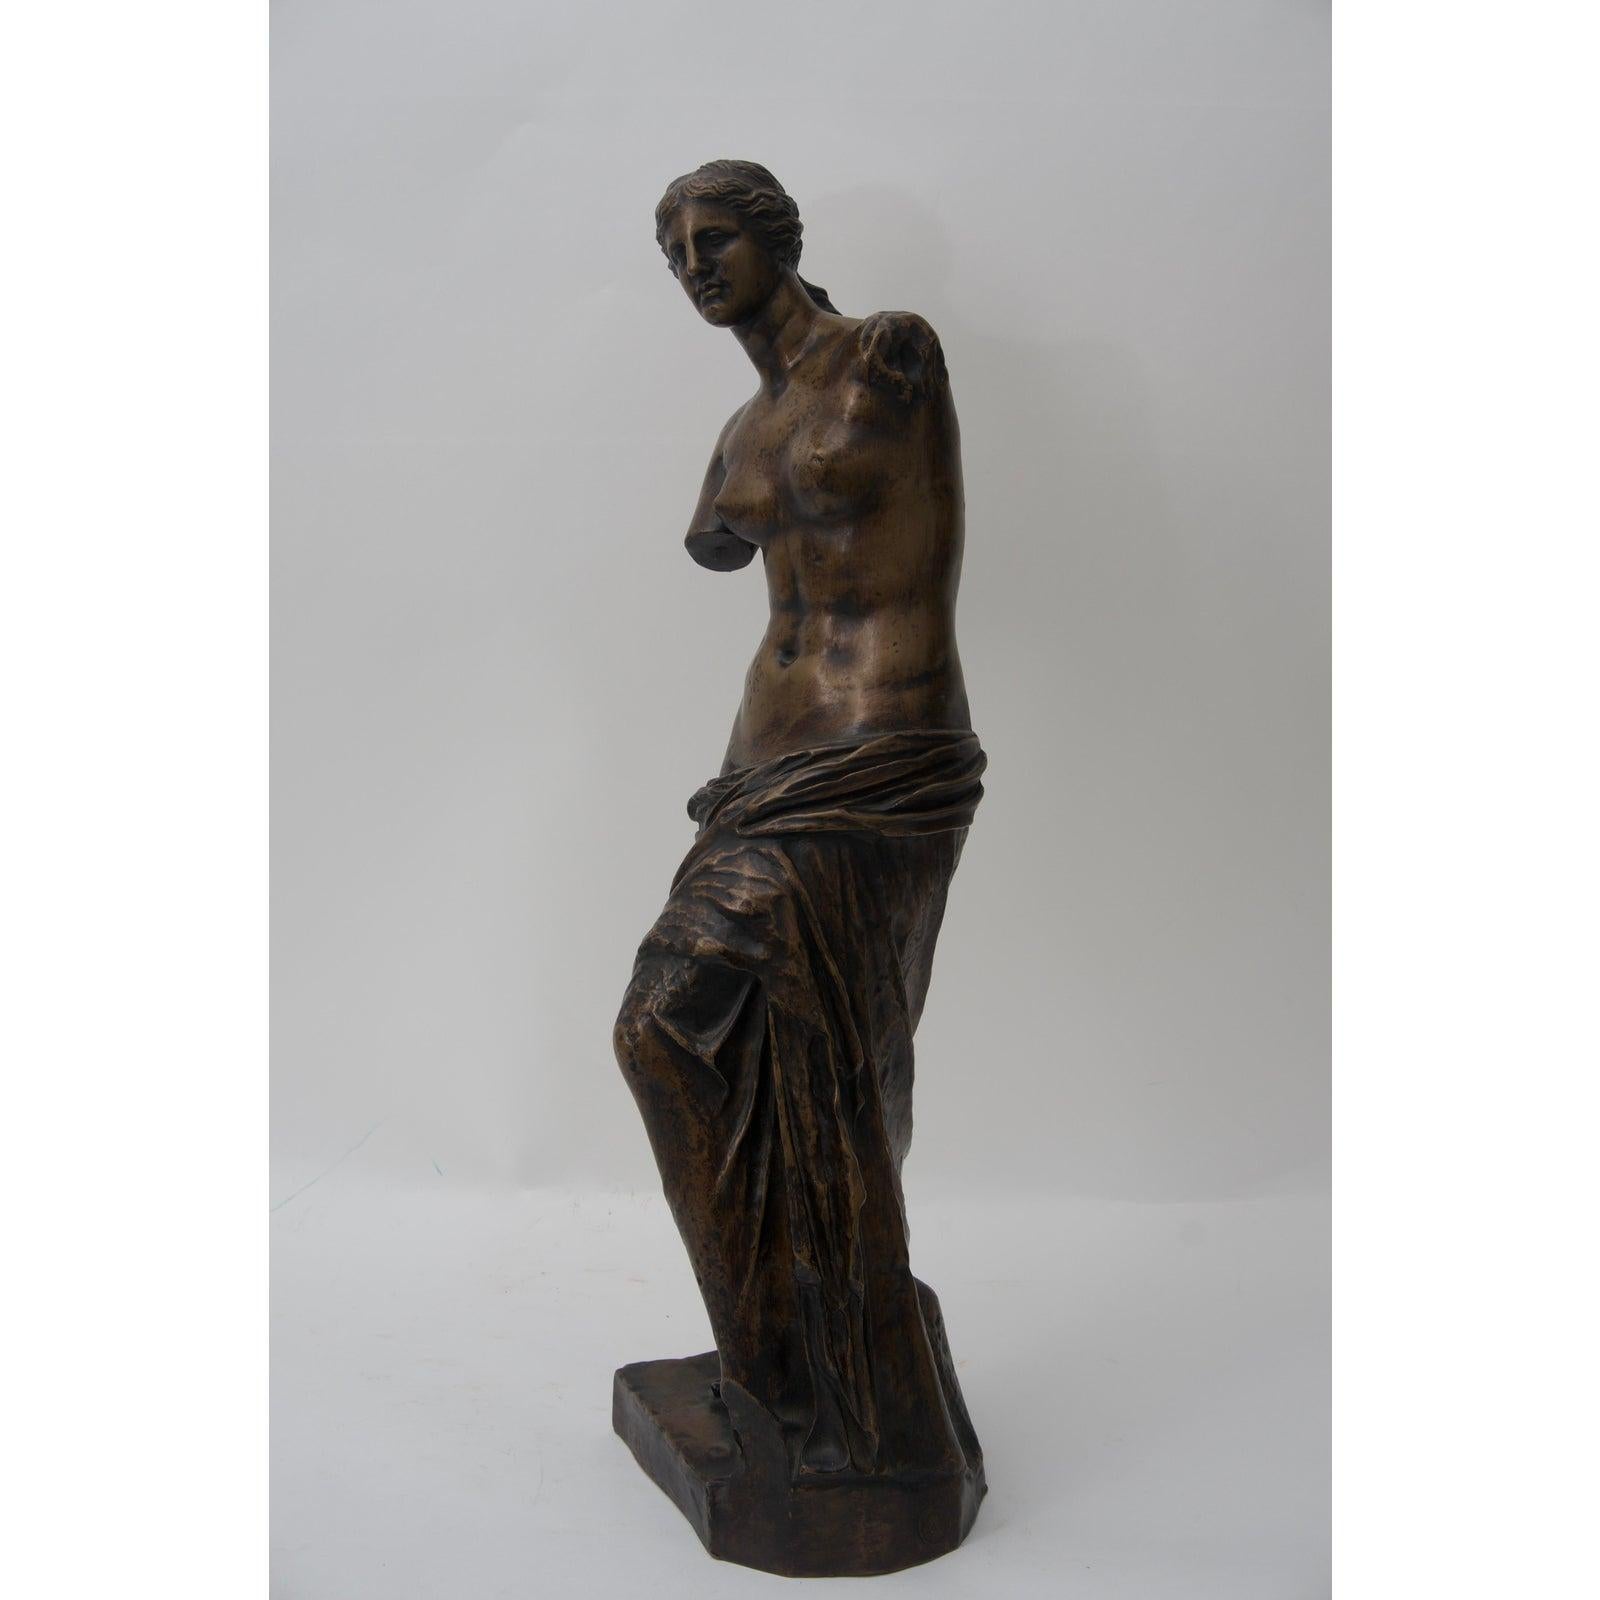 Diese gegossene Bronzeskulptur der Venus de Milo stammt aus den 1860er-1880er Jahren und wurde von der 1838 von Ferdinand Barbedienne und Achille Collas gegründeten Gießerei F. Barbedinne in Paris gegossen.  

Hinweis: Das Stück ist auf dem Sockel